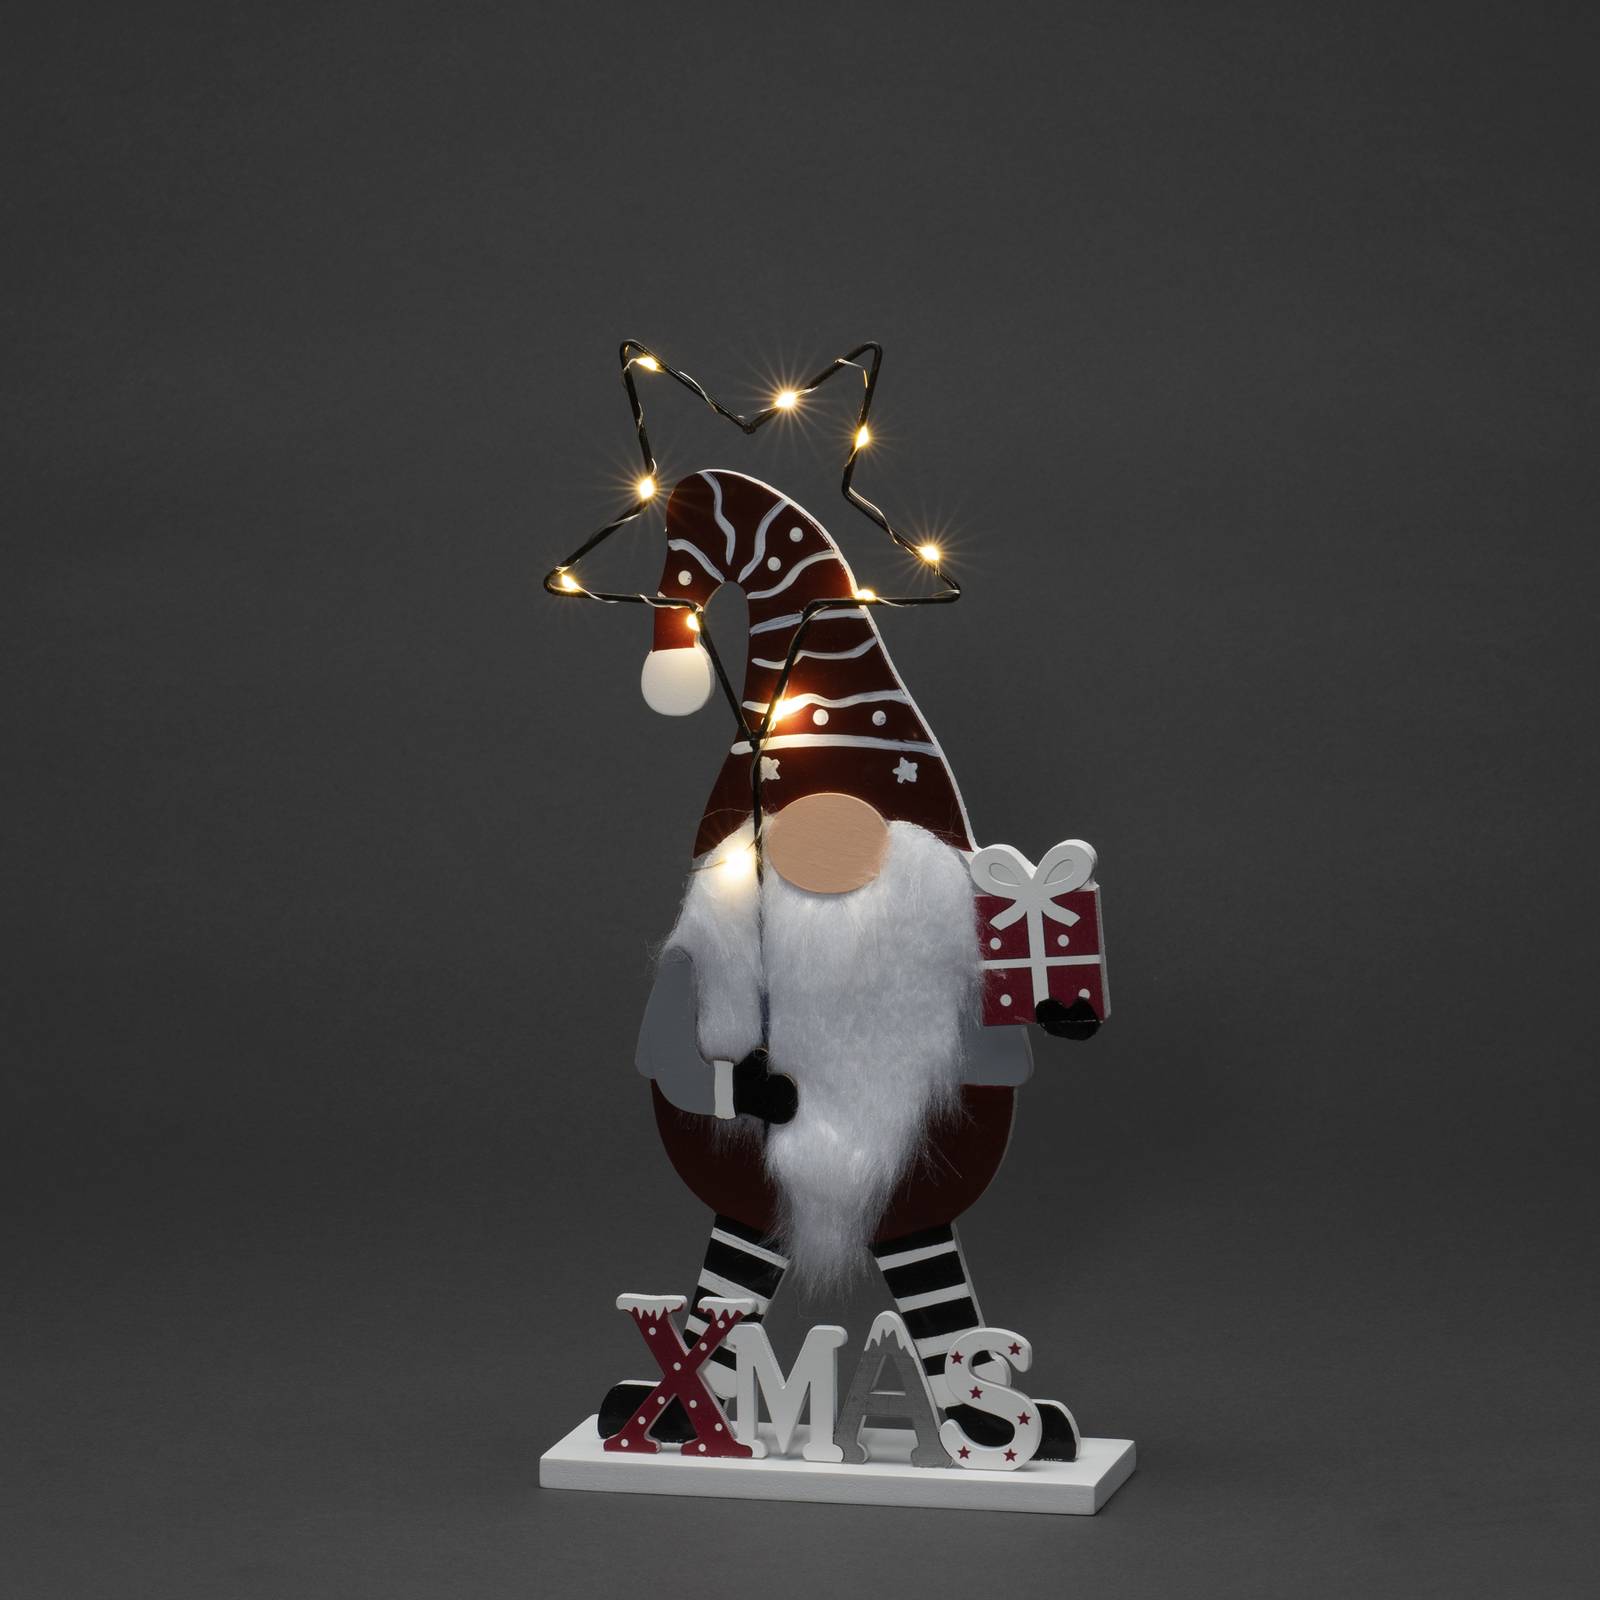 Konstsmide Christmas LED sfeerlamp Santa met ster, op batterijen